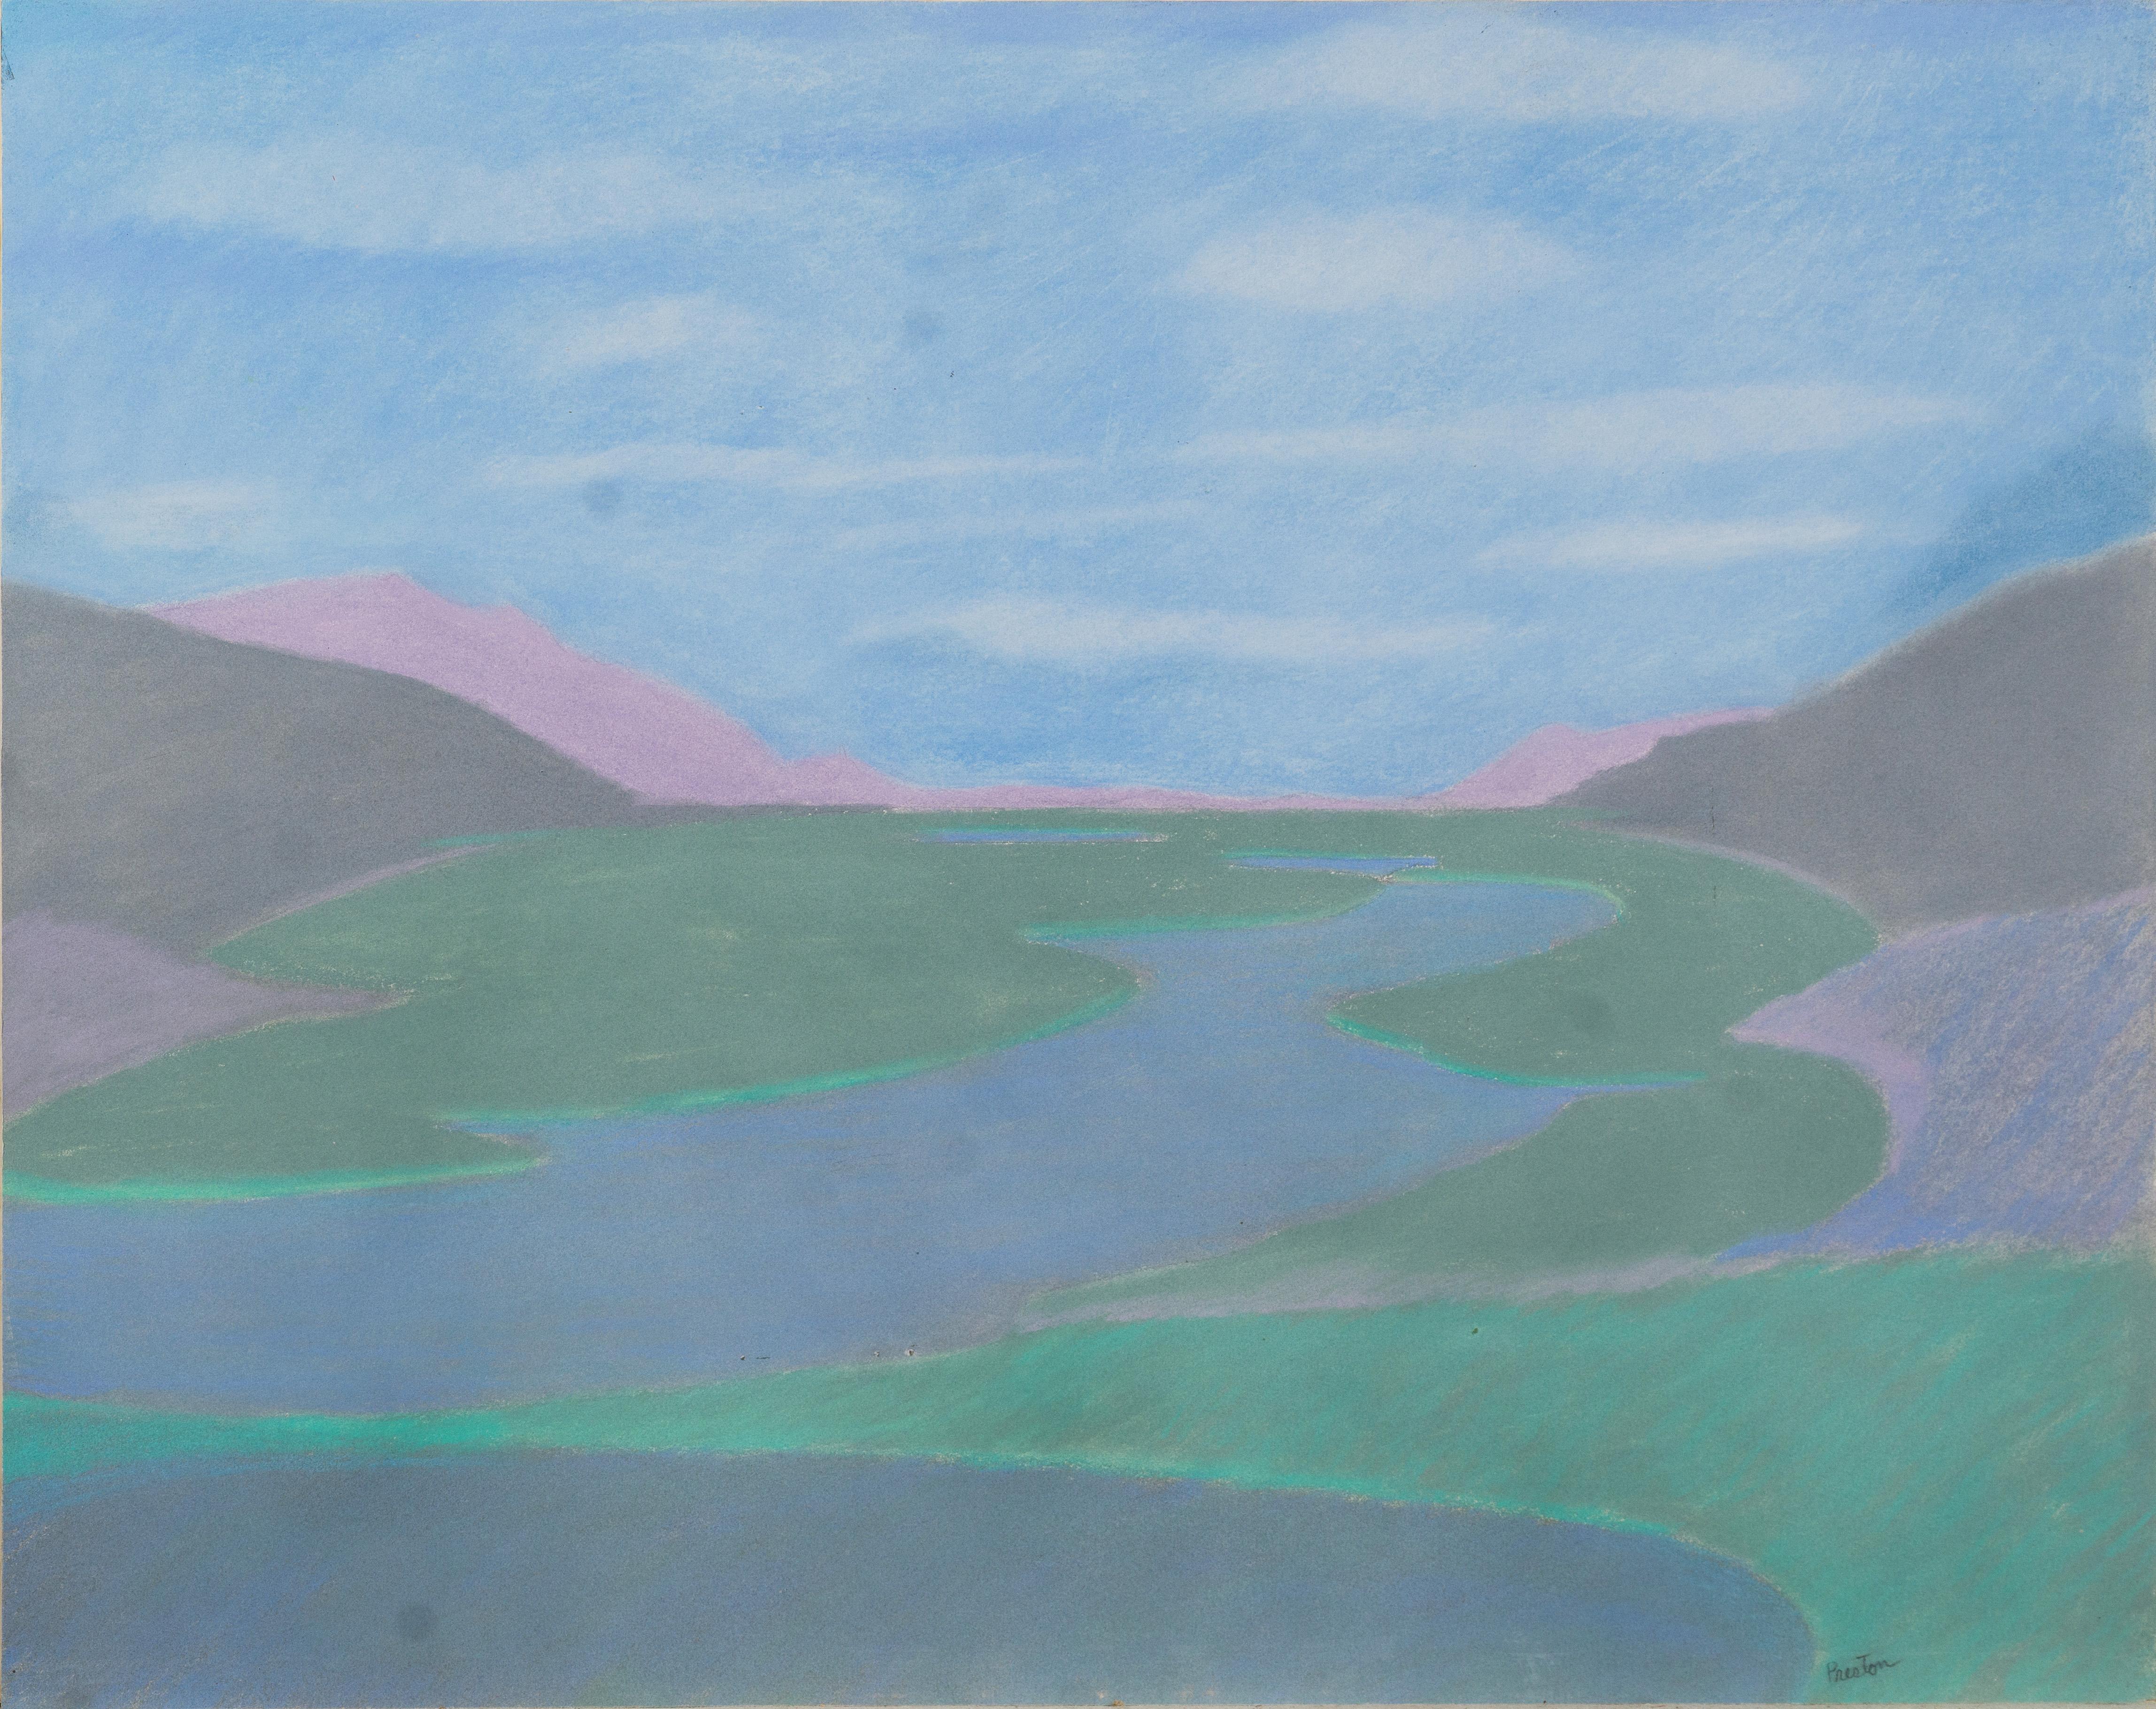 Landscape Painting Malcolm Preston - Vieux paysage abstrait de Cap Cod, peinture moderniste originale au pastel